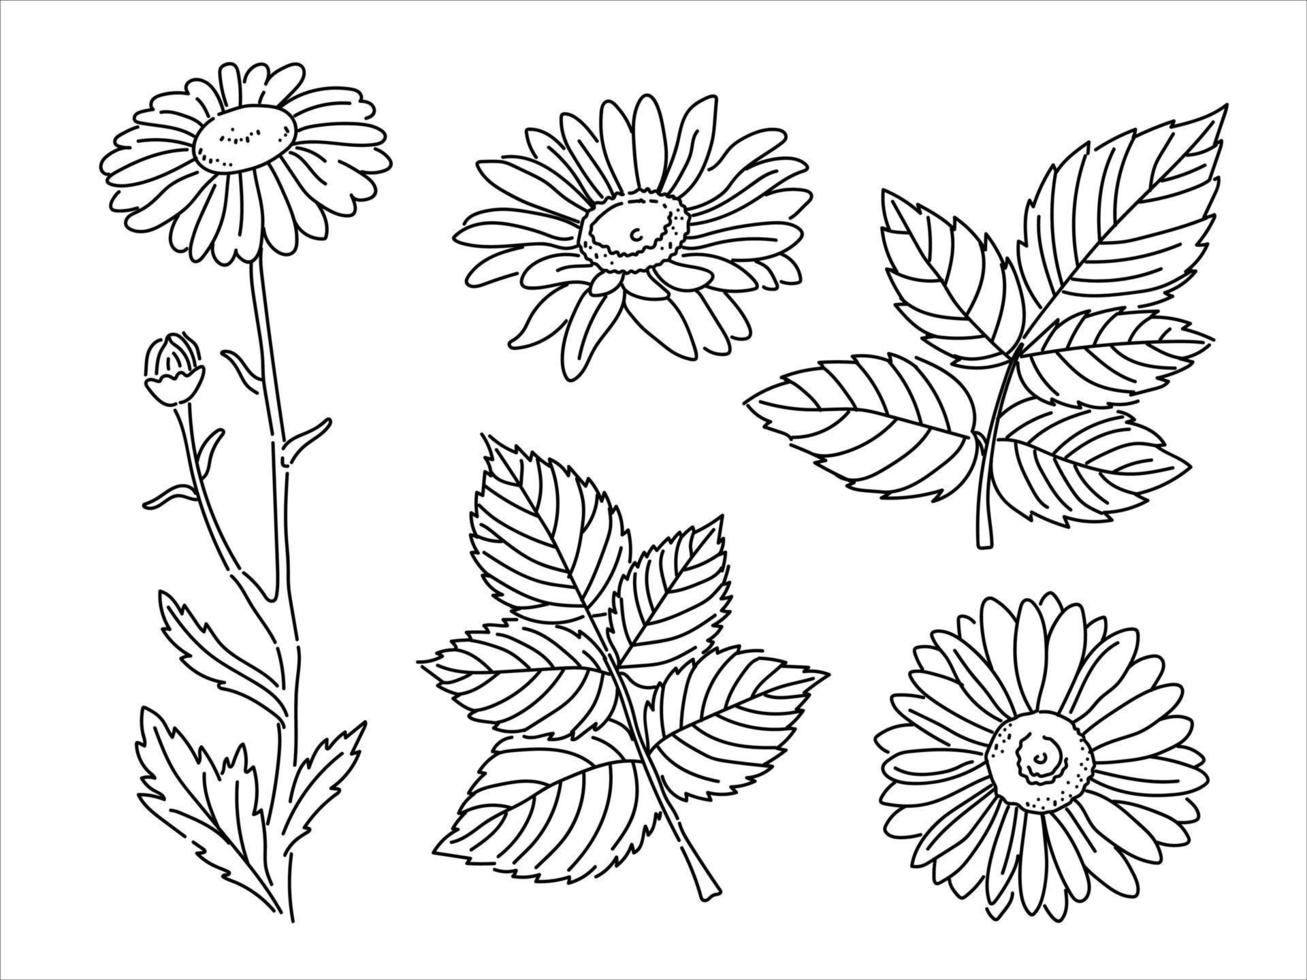 vector reeks van kamilles in tekening stijl. silhouet van een apotheek bloem. botanisch geneeskrachtig fabriek